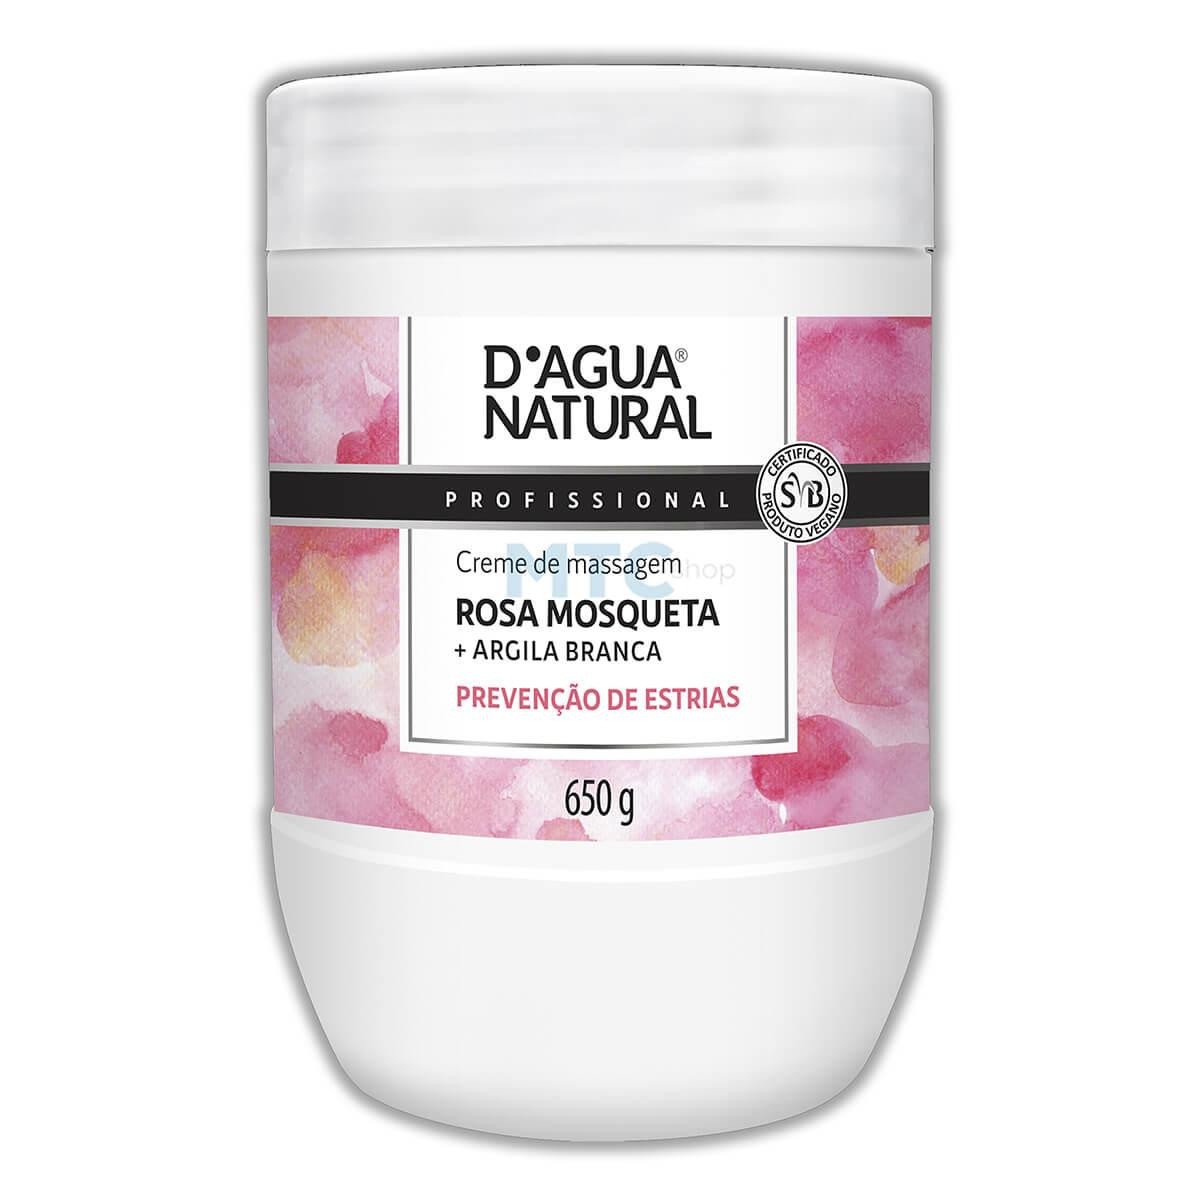 Creme de Massagem Rosa Mosqueta + Argila Branca - 650g - D'Agua Natural